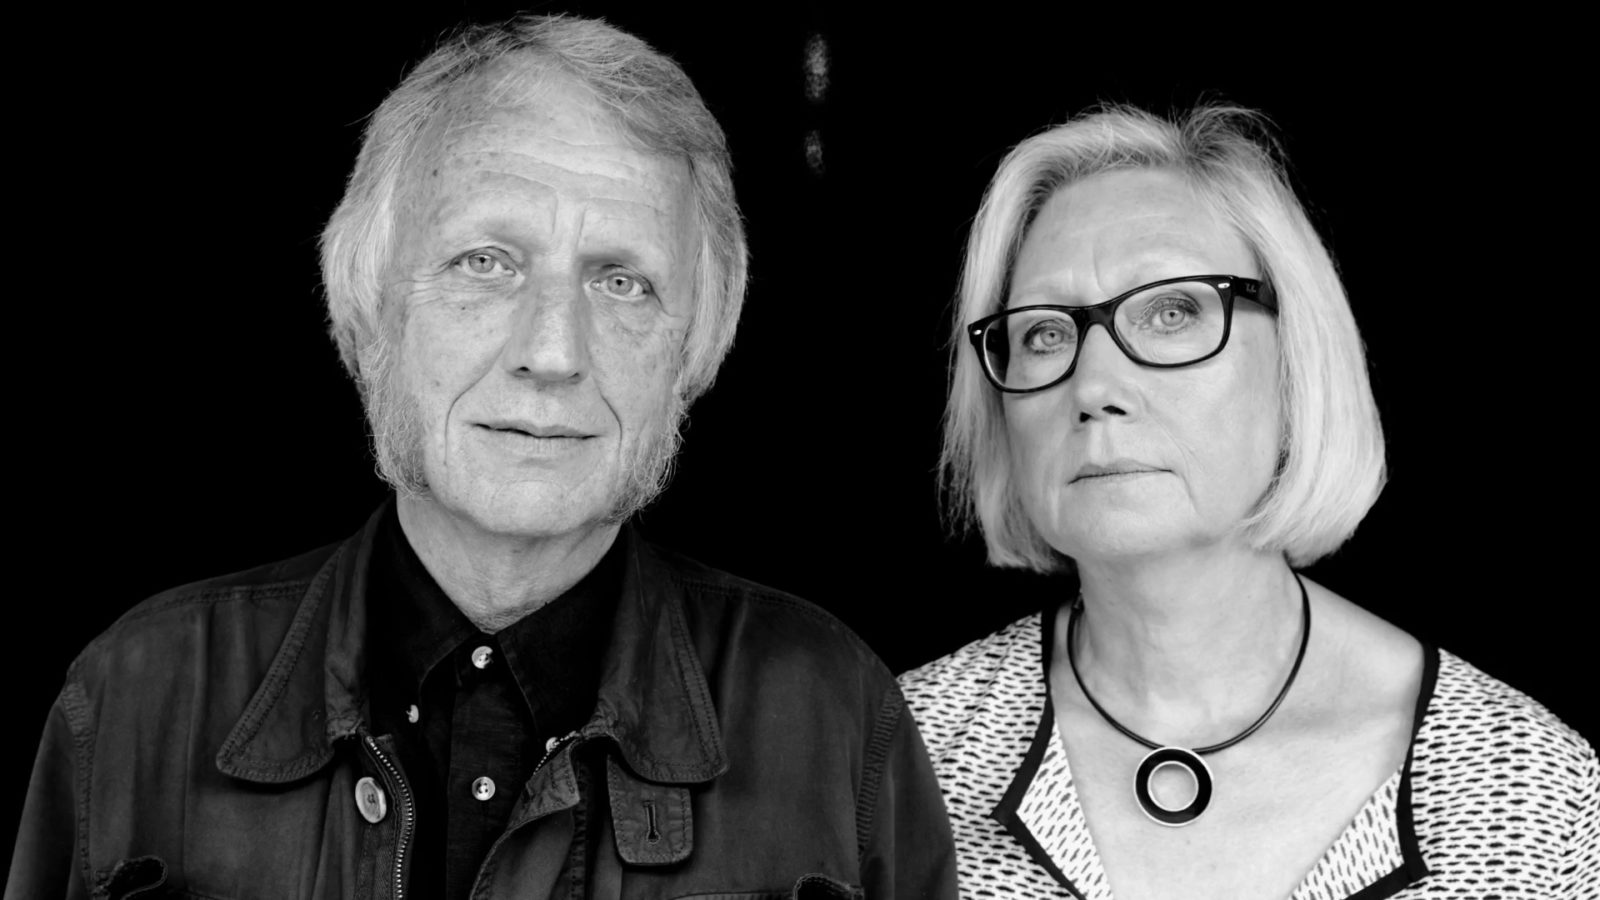 Ein schwarz und weiß gekleidetes älteres Paar, Knut und Marianne Hagberg, trägt gemeinsam einen einfachen Holztisch.